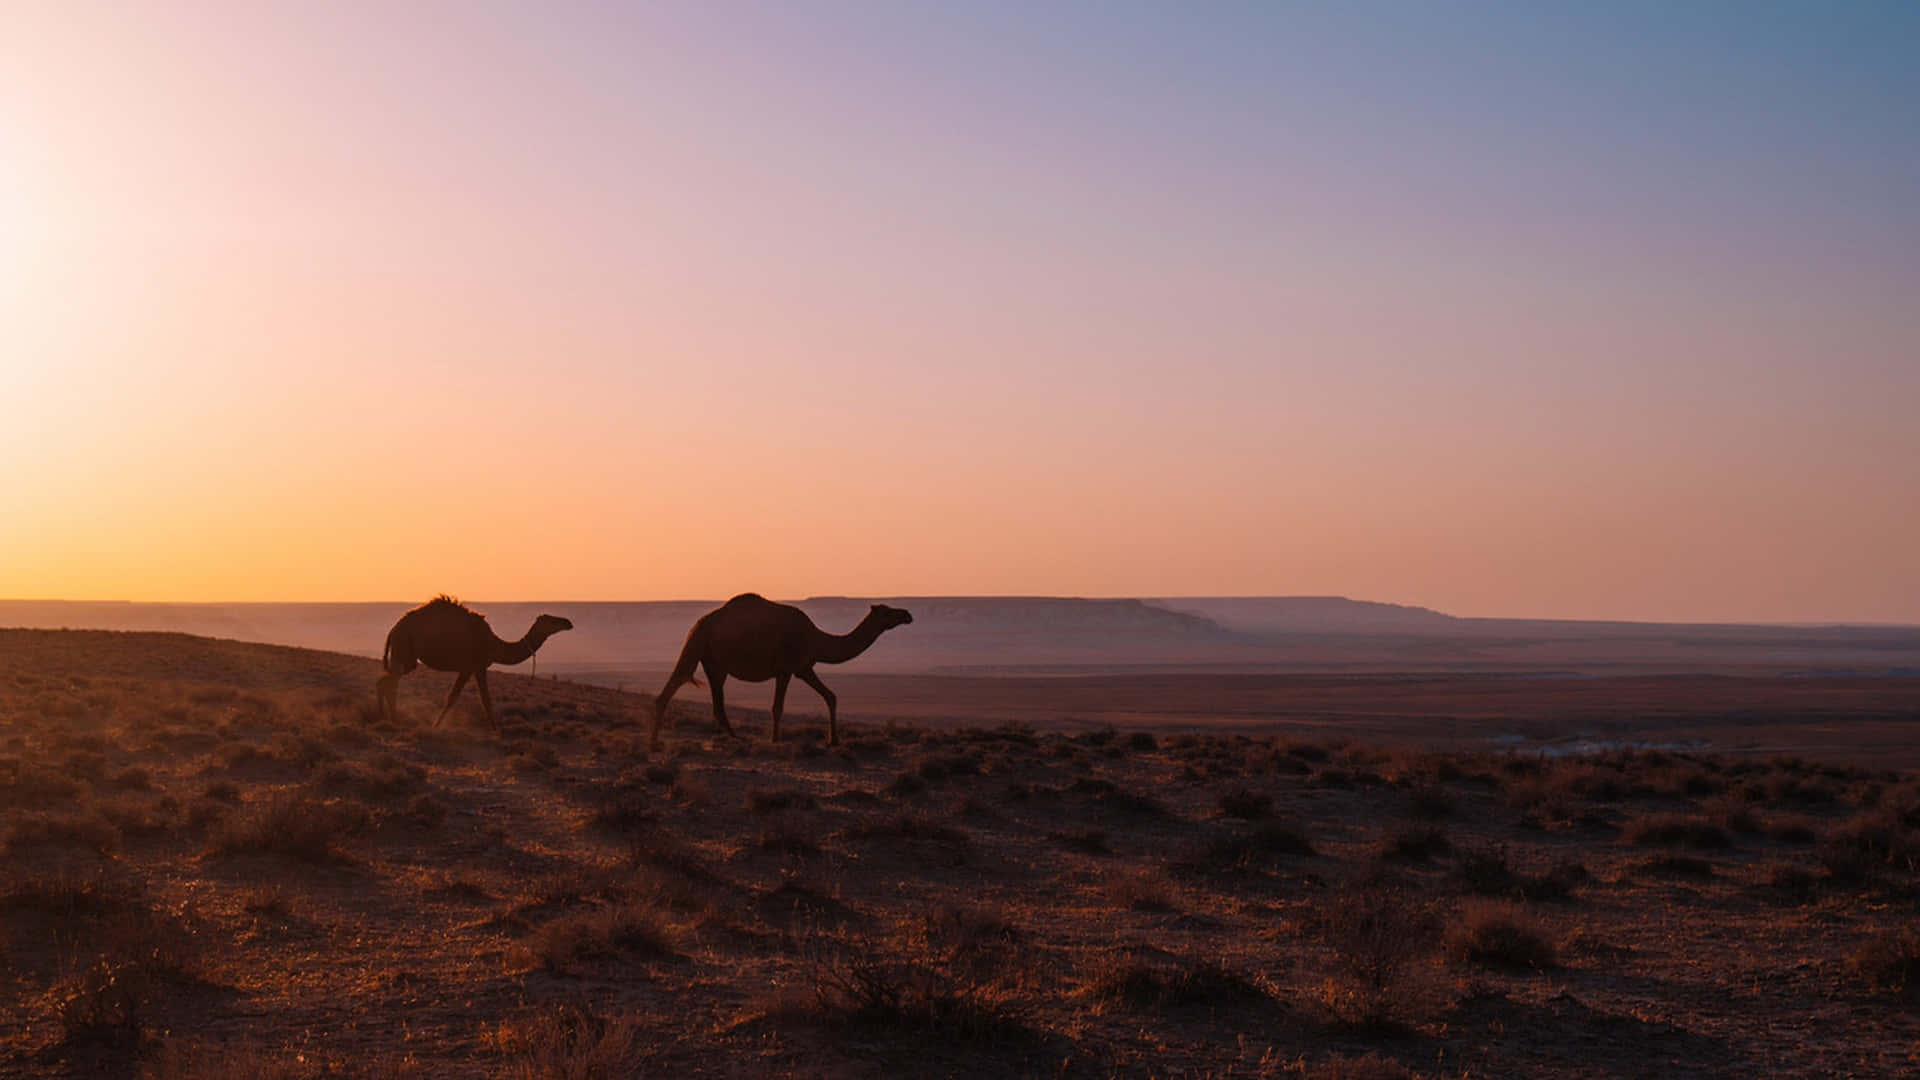 A herd of camels traversing across an arid desert.